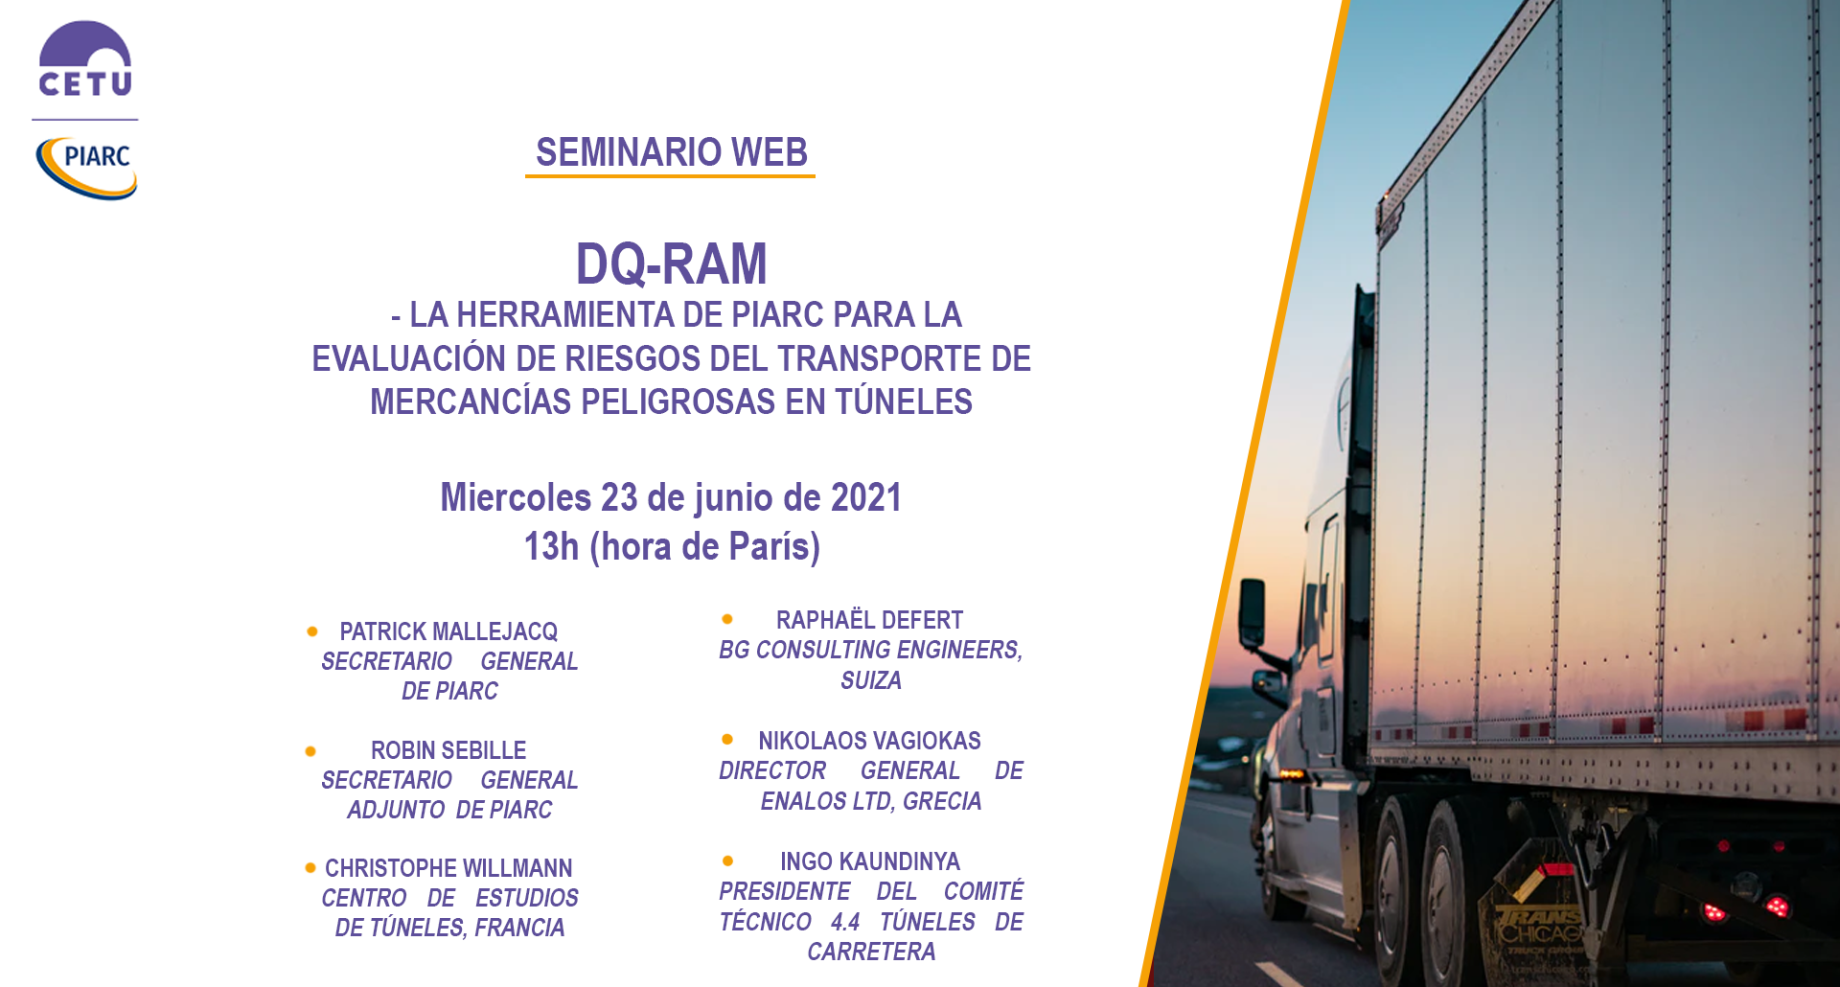 Descubra el nuevo programa de evaluación de riesgos de PIARC para mercancías peligrosas en túneles (QRAM) en el próximo seminario web el 23 de junio